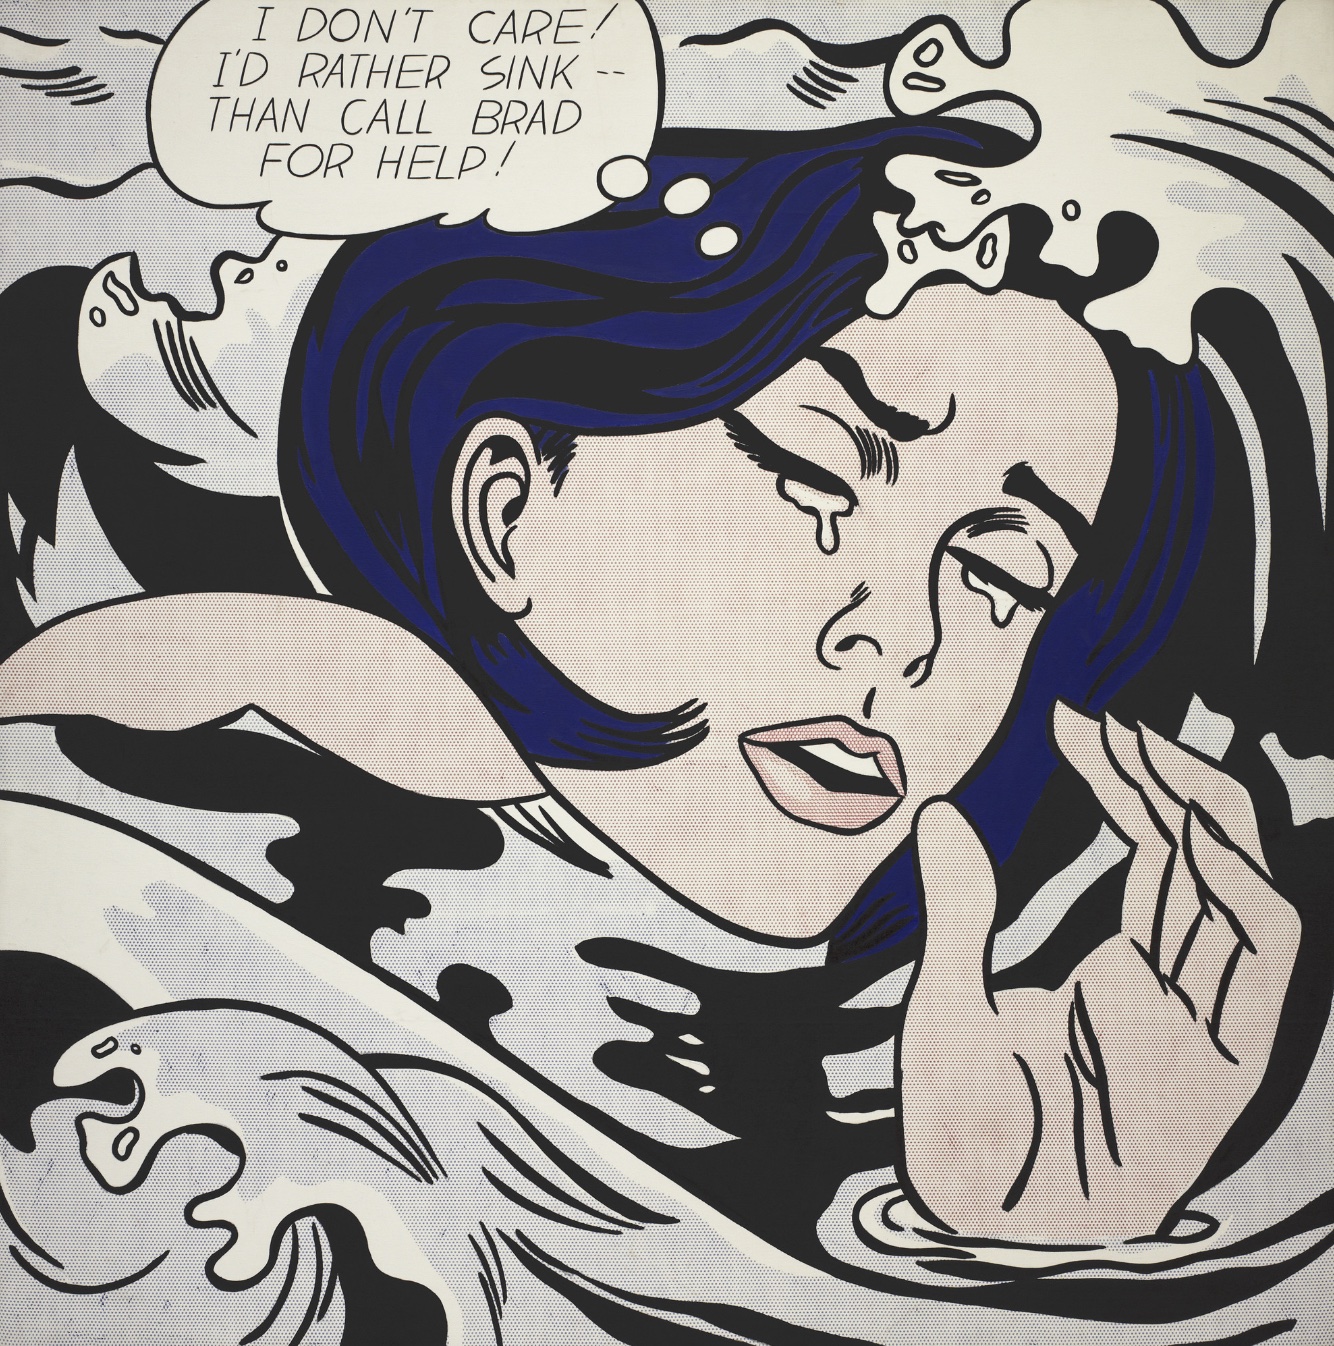 Drowning Girl de Roy Lichtenstein — prezintă imaginea femeii care plânge din benzile desenate de mai sus.